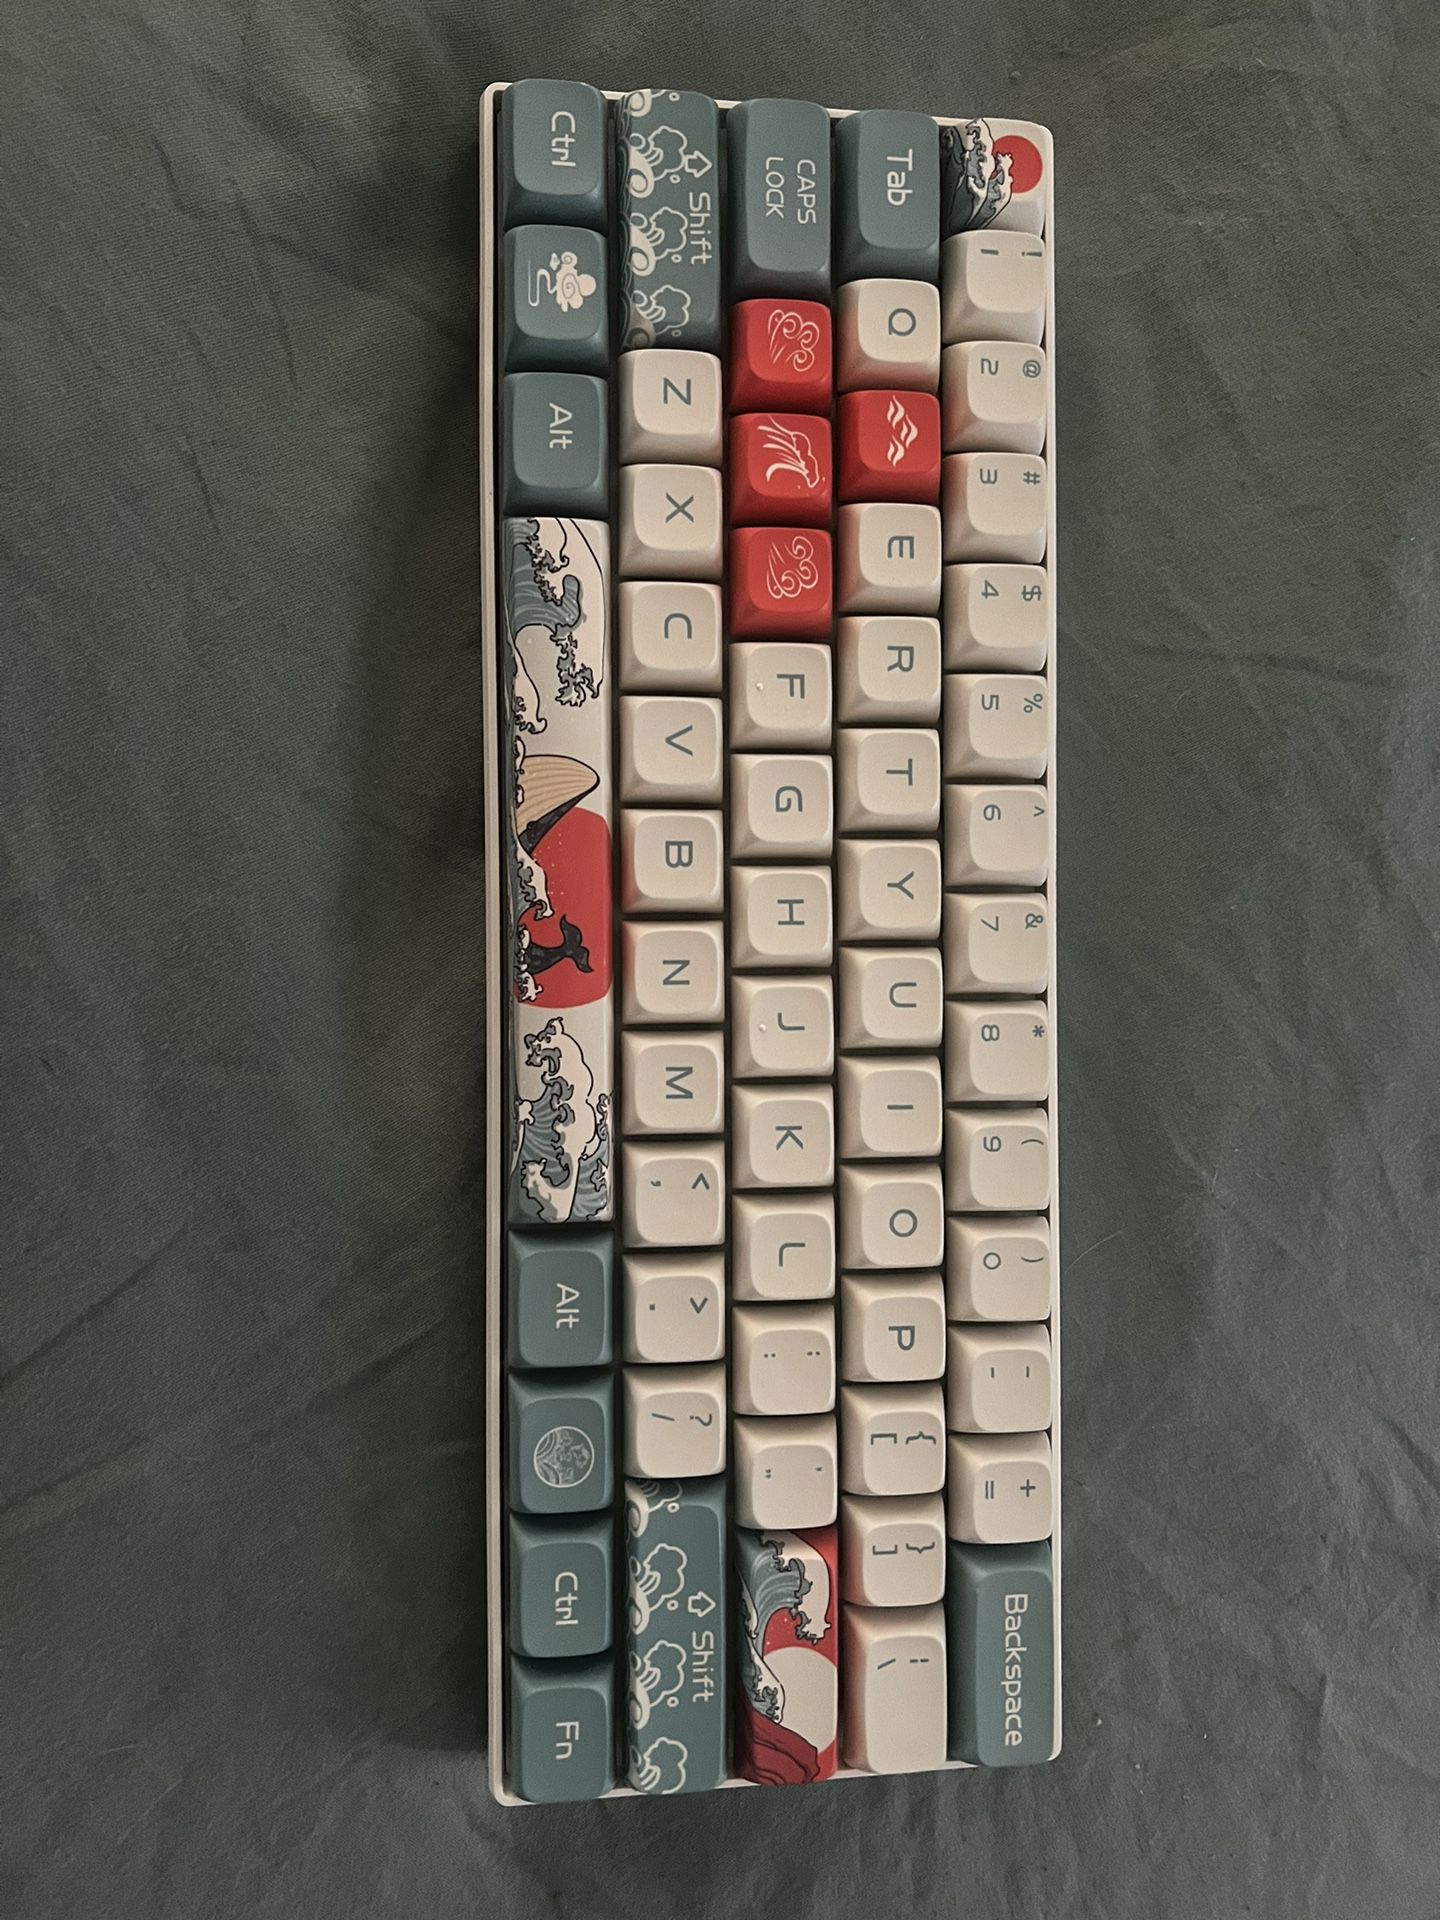 Custom 60% Mechanical Keyboard